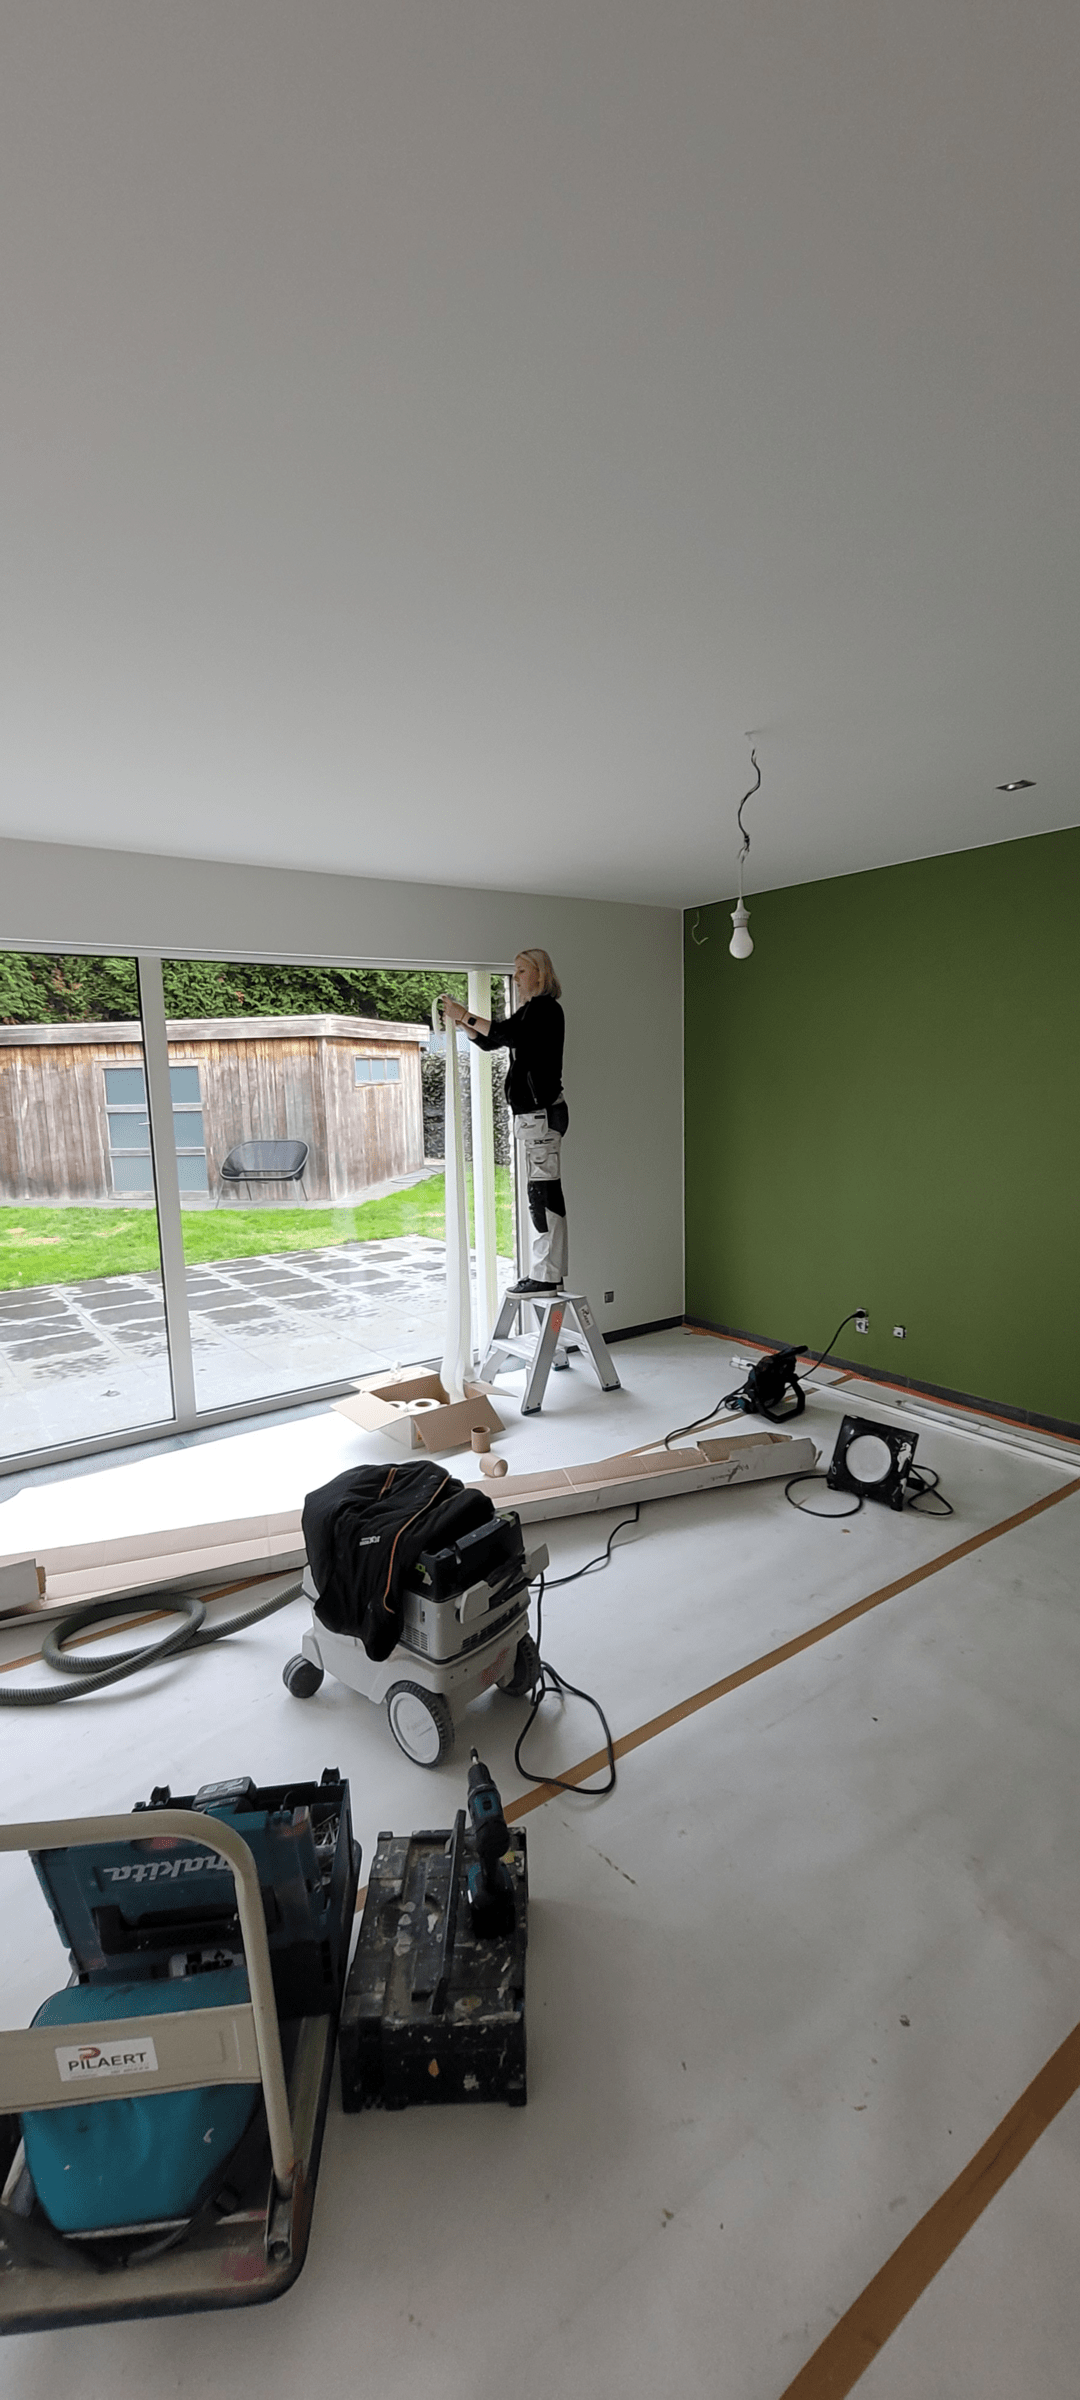 binnenschilderen groene muur afwerking